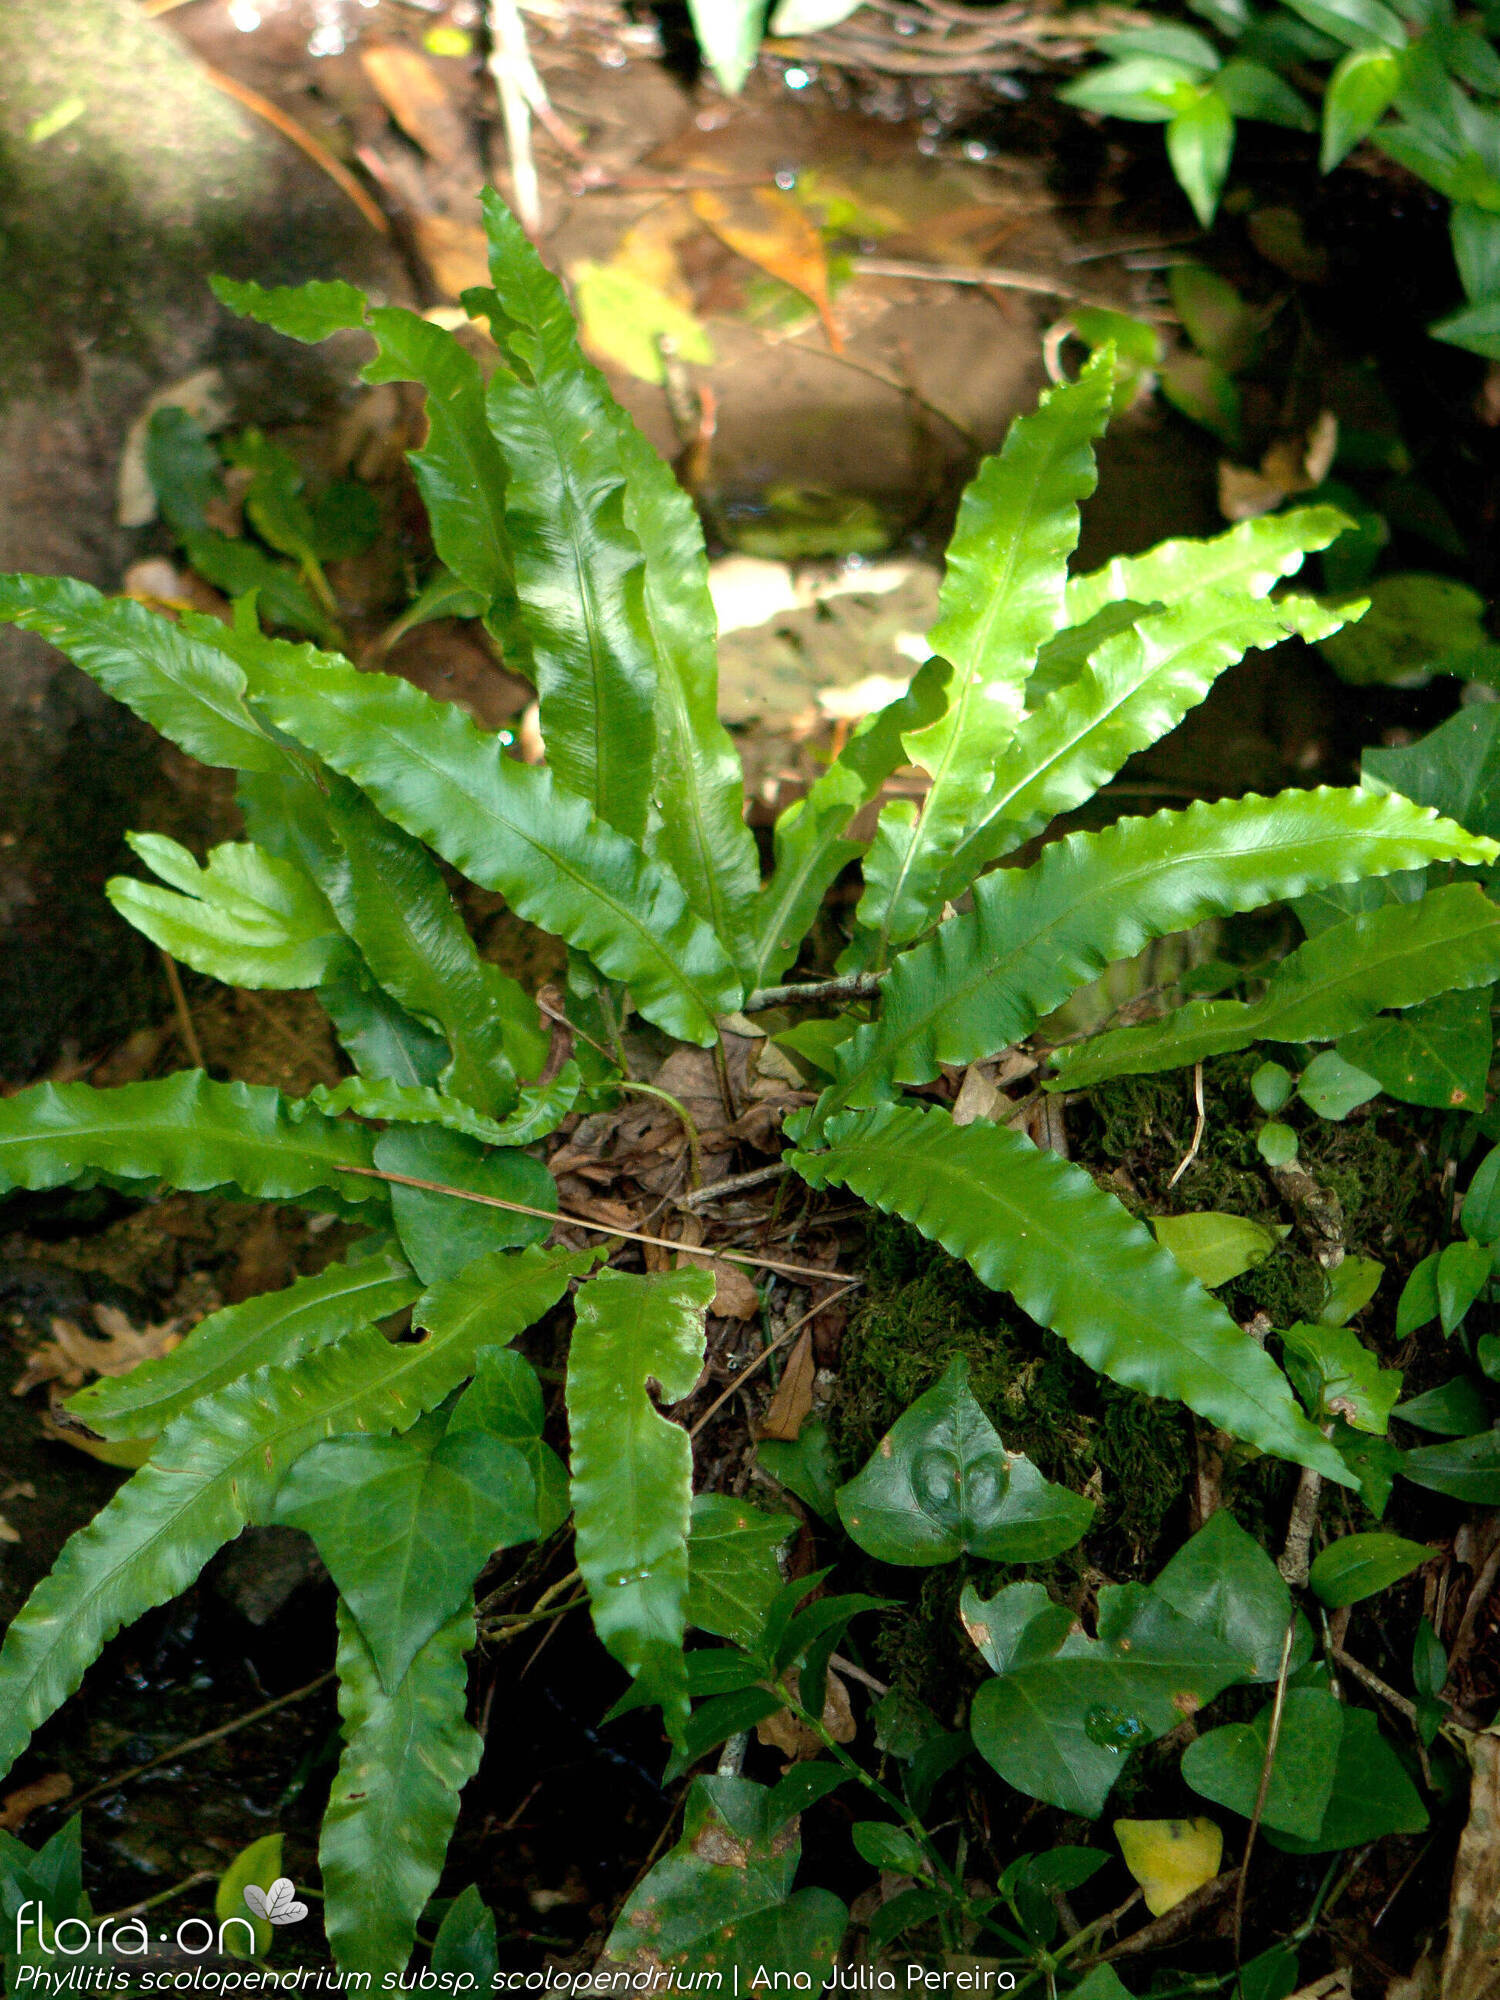 Phyllitis scolopendrium scolopendrium - Hábito | Ana Júlia Pereira; CC BY-NC 4.0